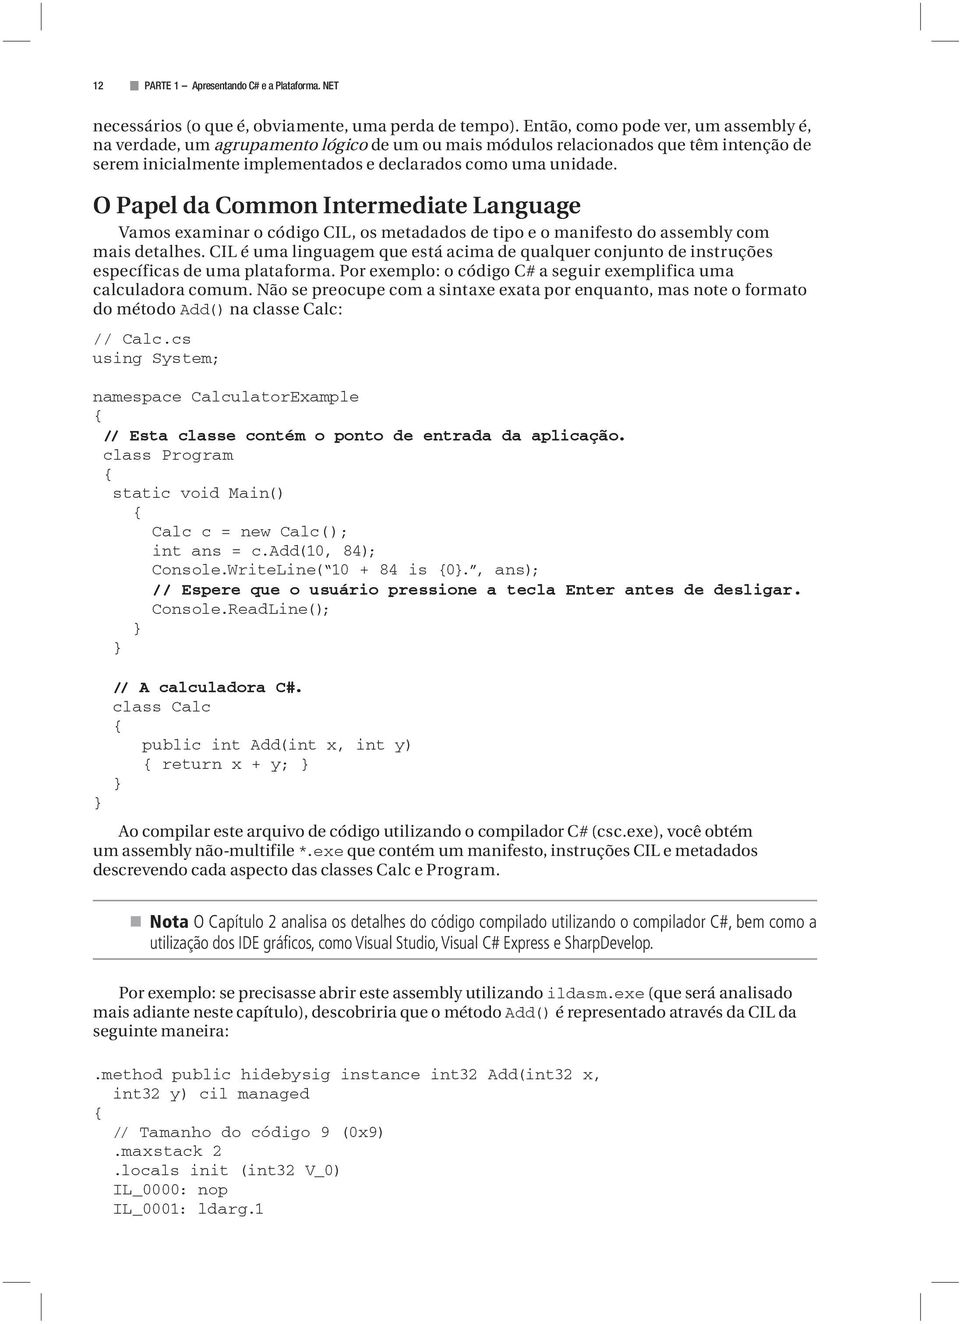 O Papel da Common Intermediate Language Vamos examinar o código CIL, os metadados de tipo e o manifesto do assembly com mais detalhes.